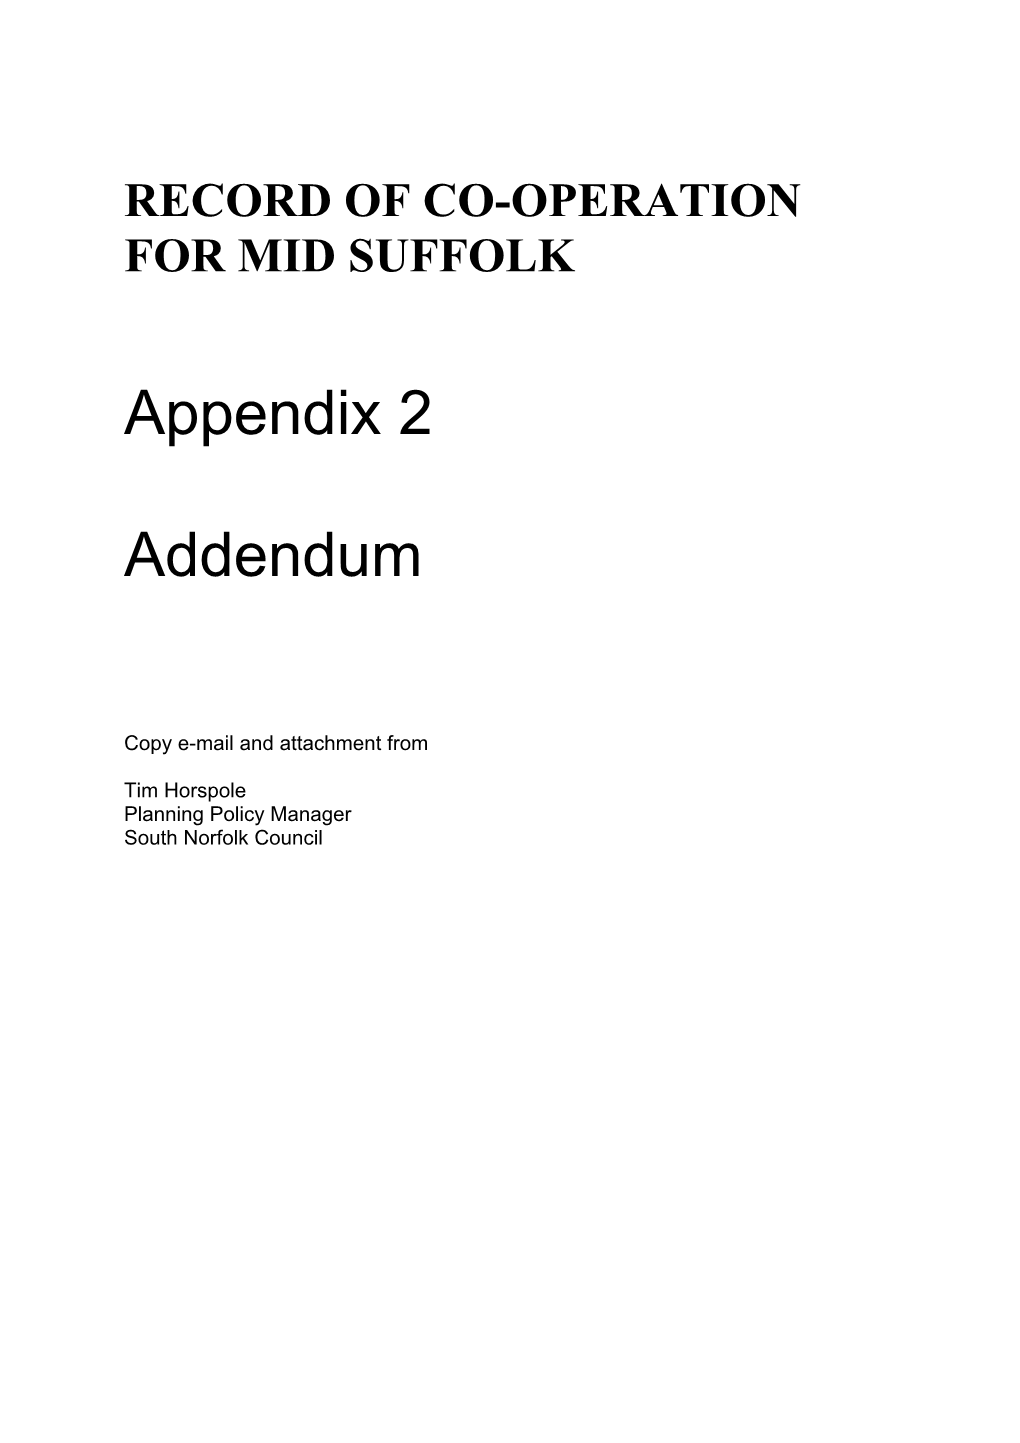 Appendix 2 Addendum